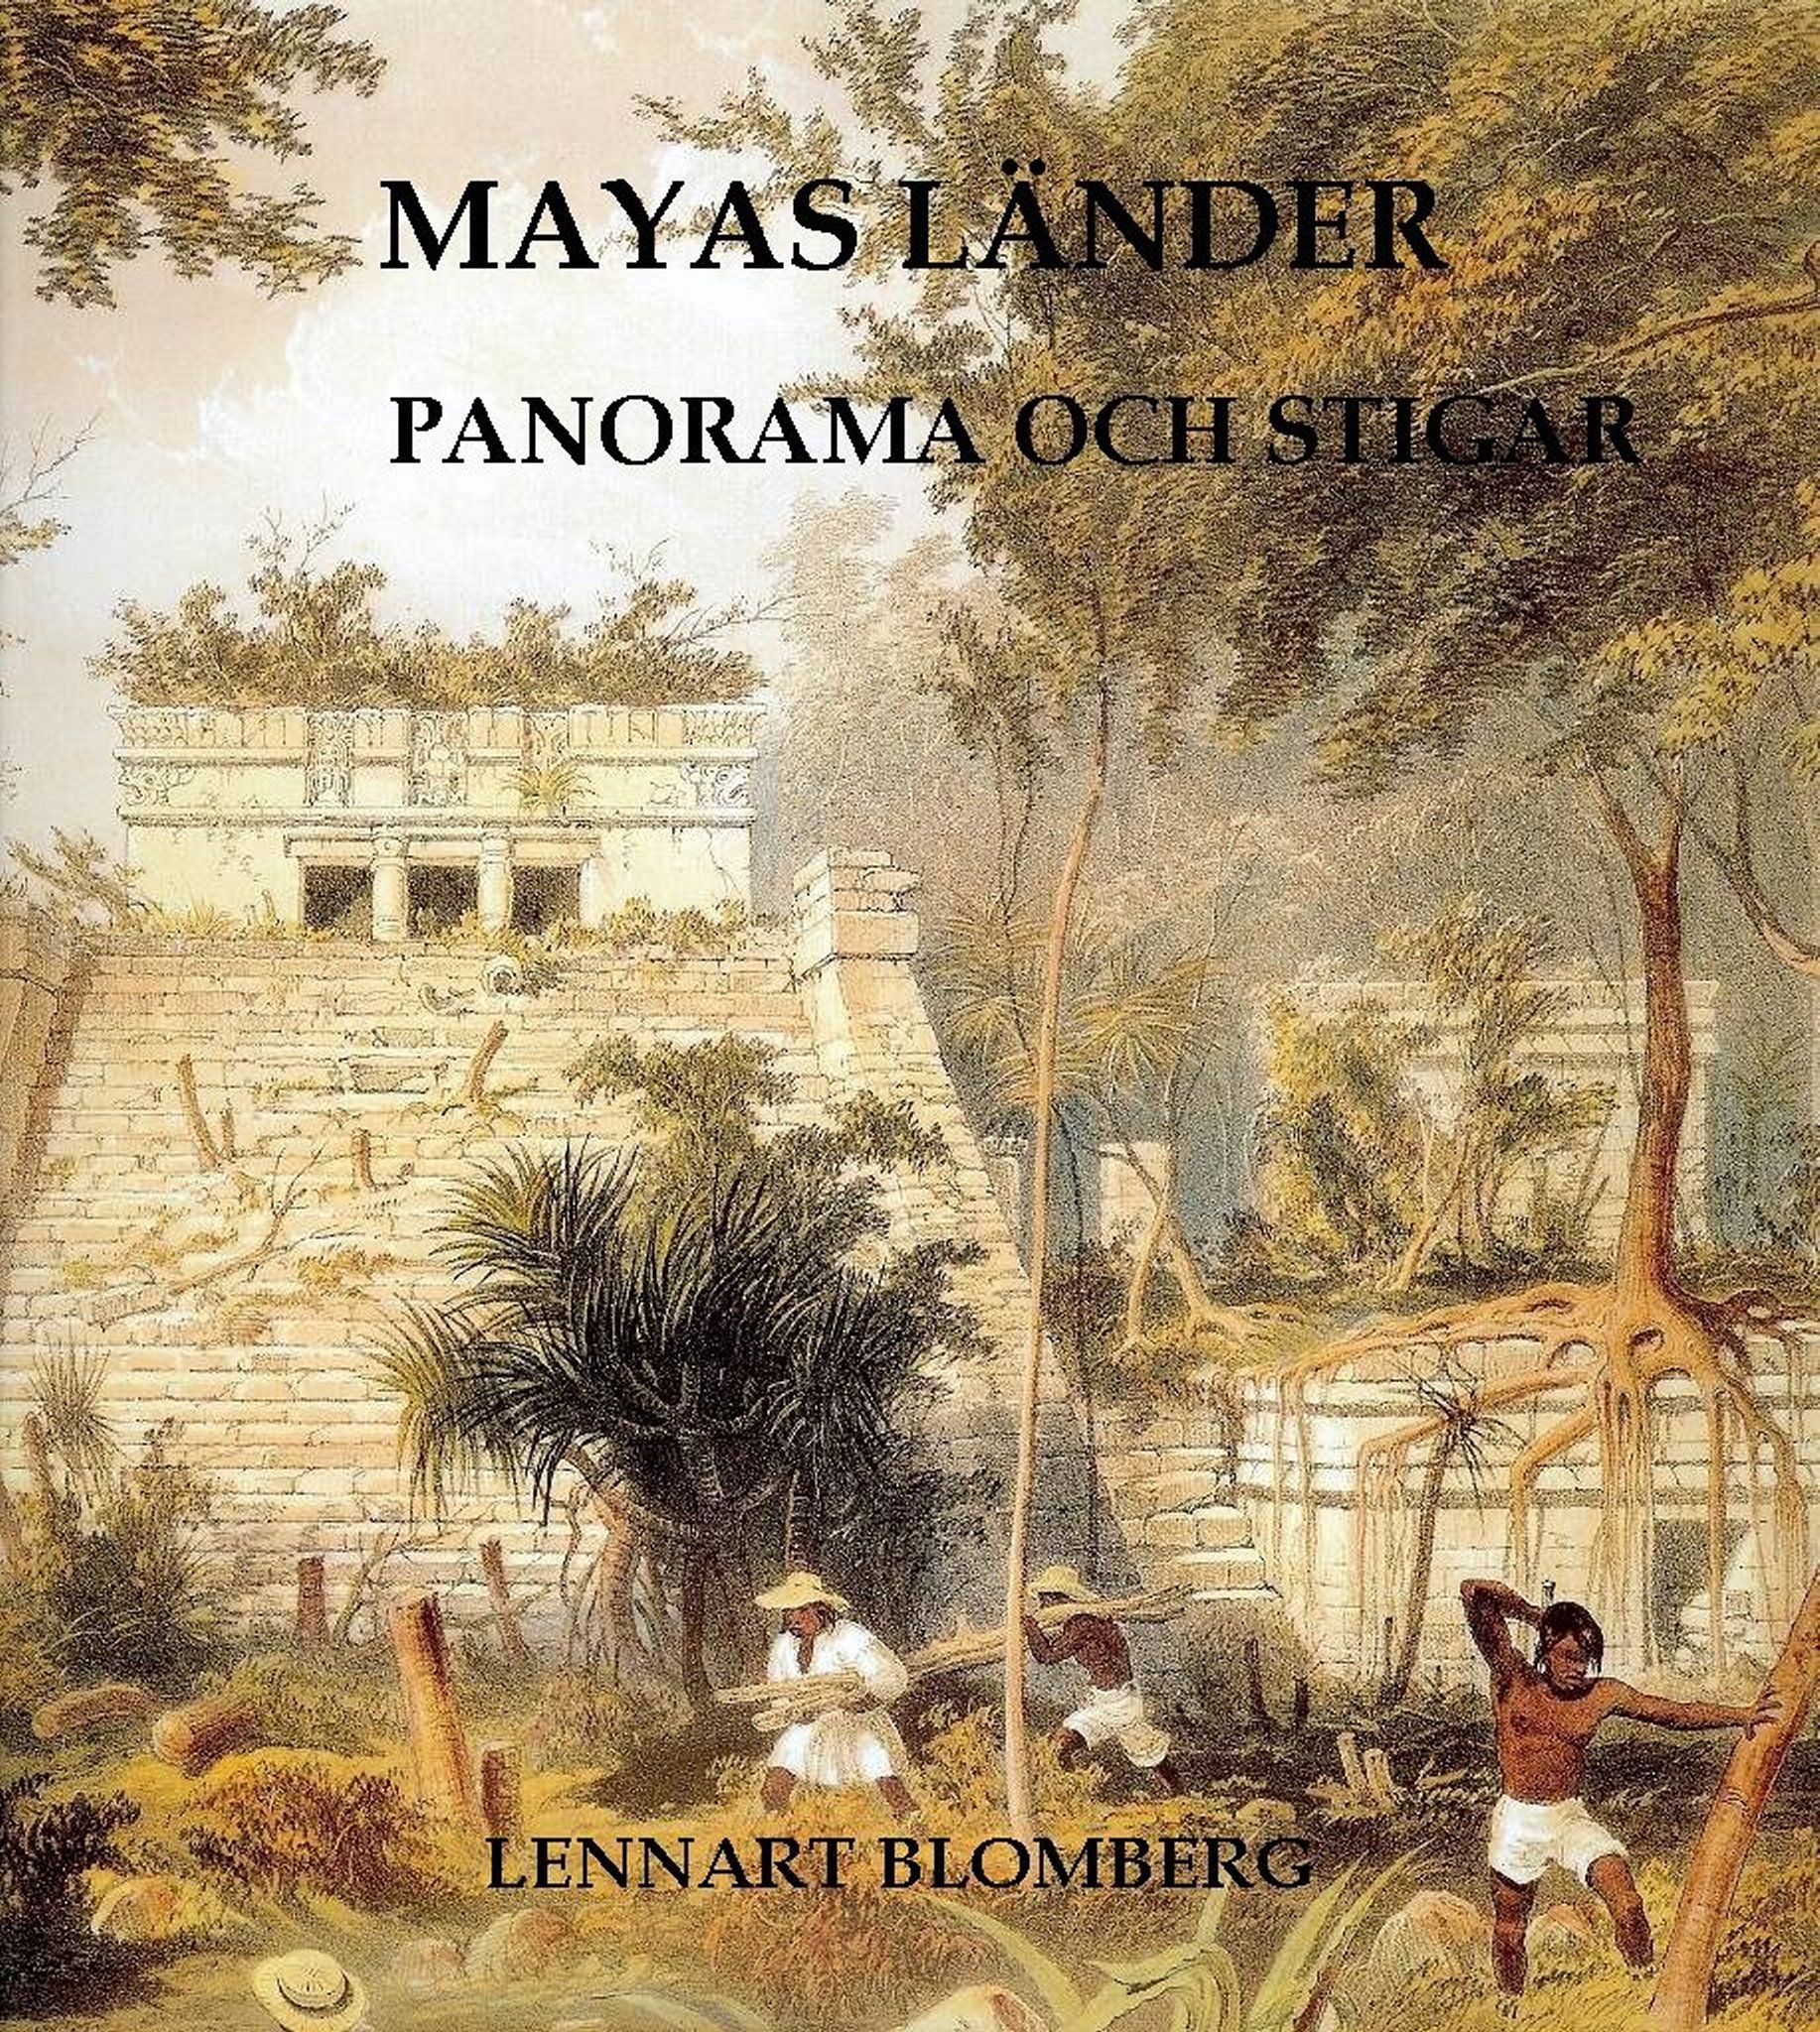 Mayas länder. Panorama och stigar, e-bog af Lennart Blomberg